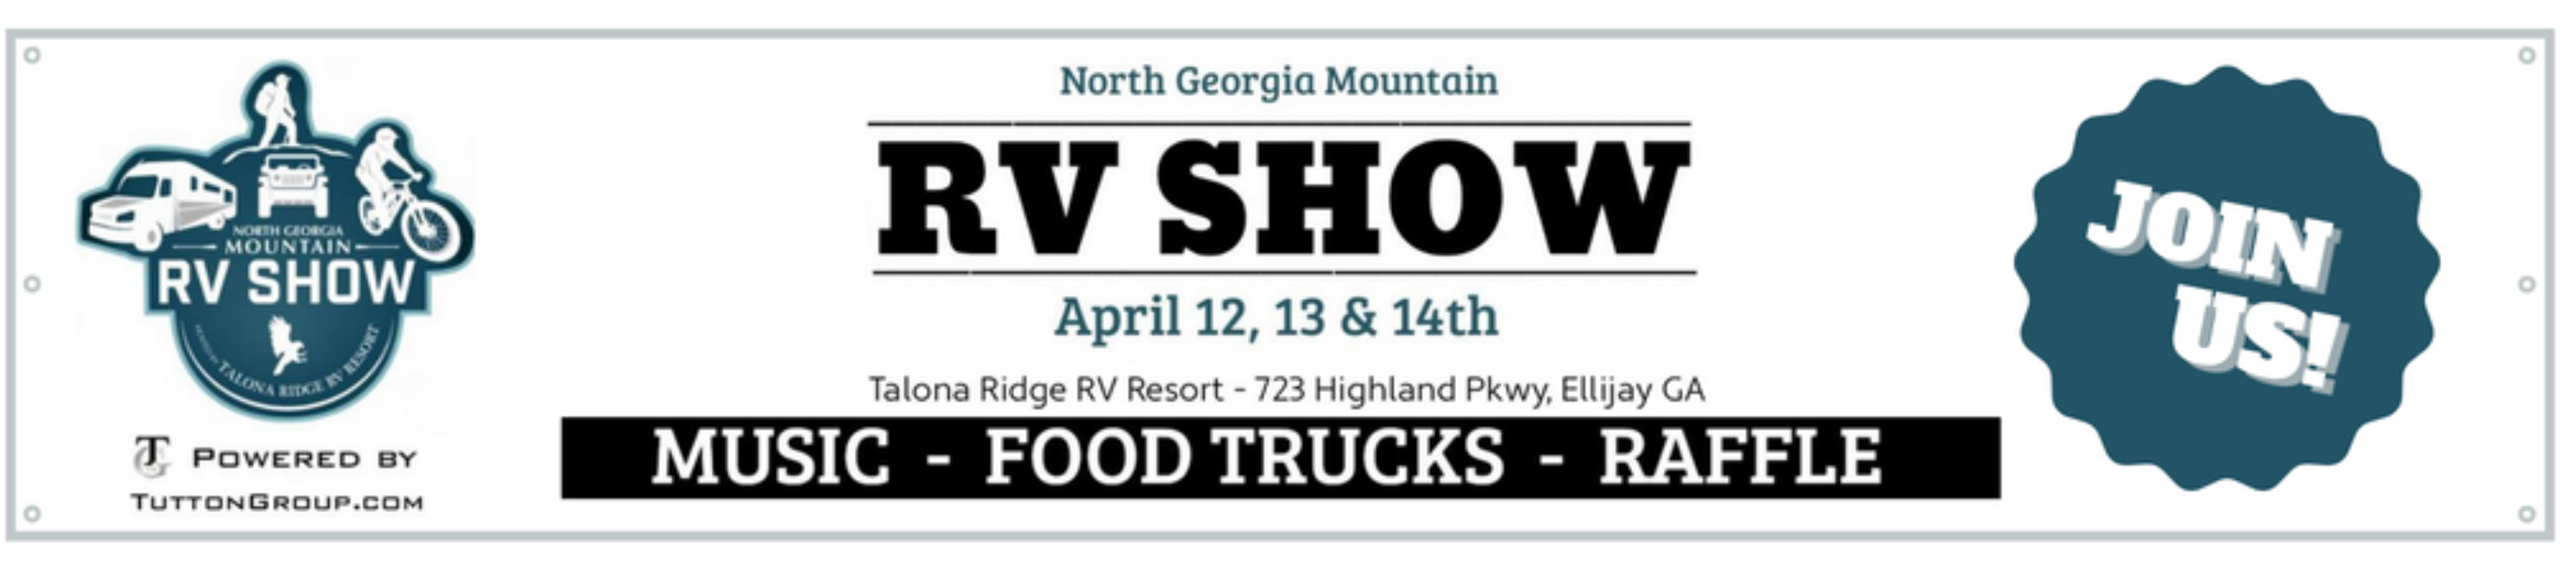 North Georgia Mountain RV Show Banner